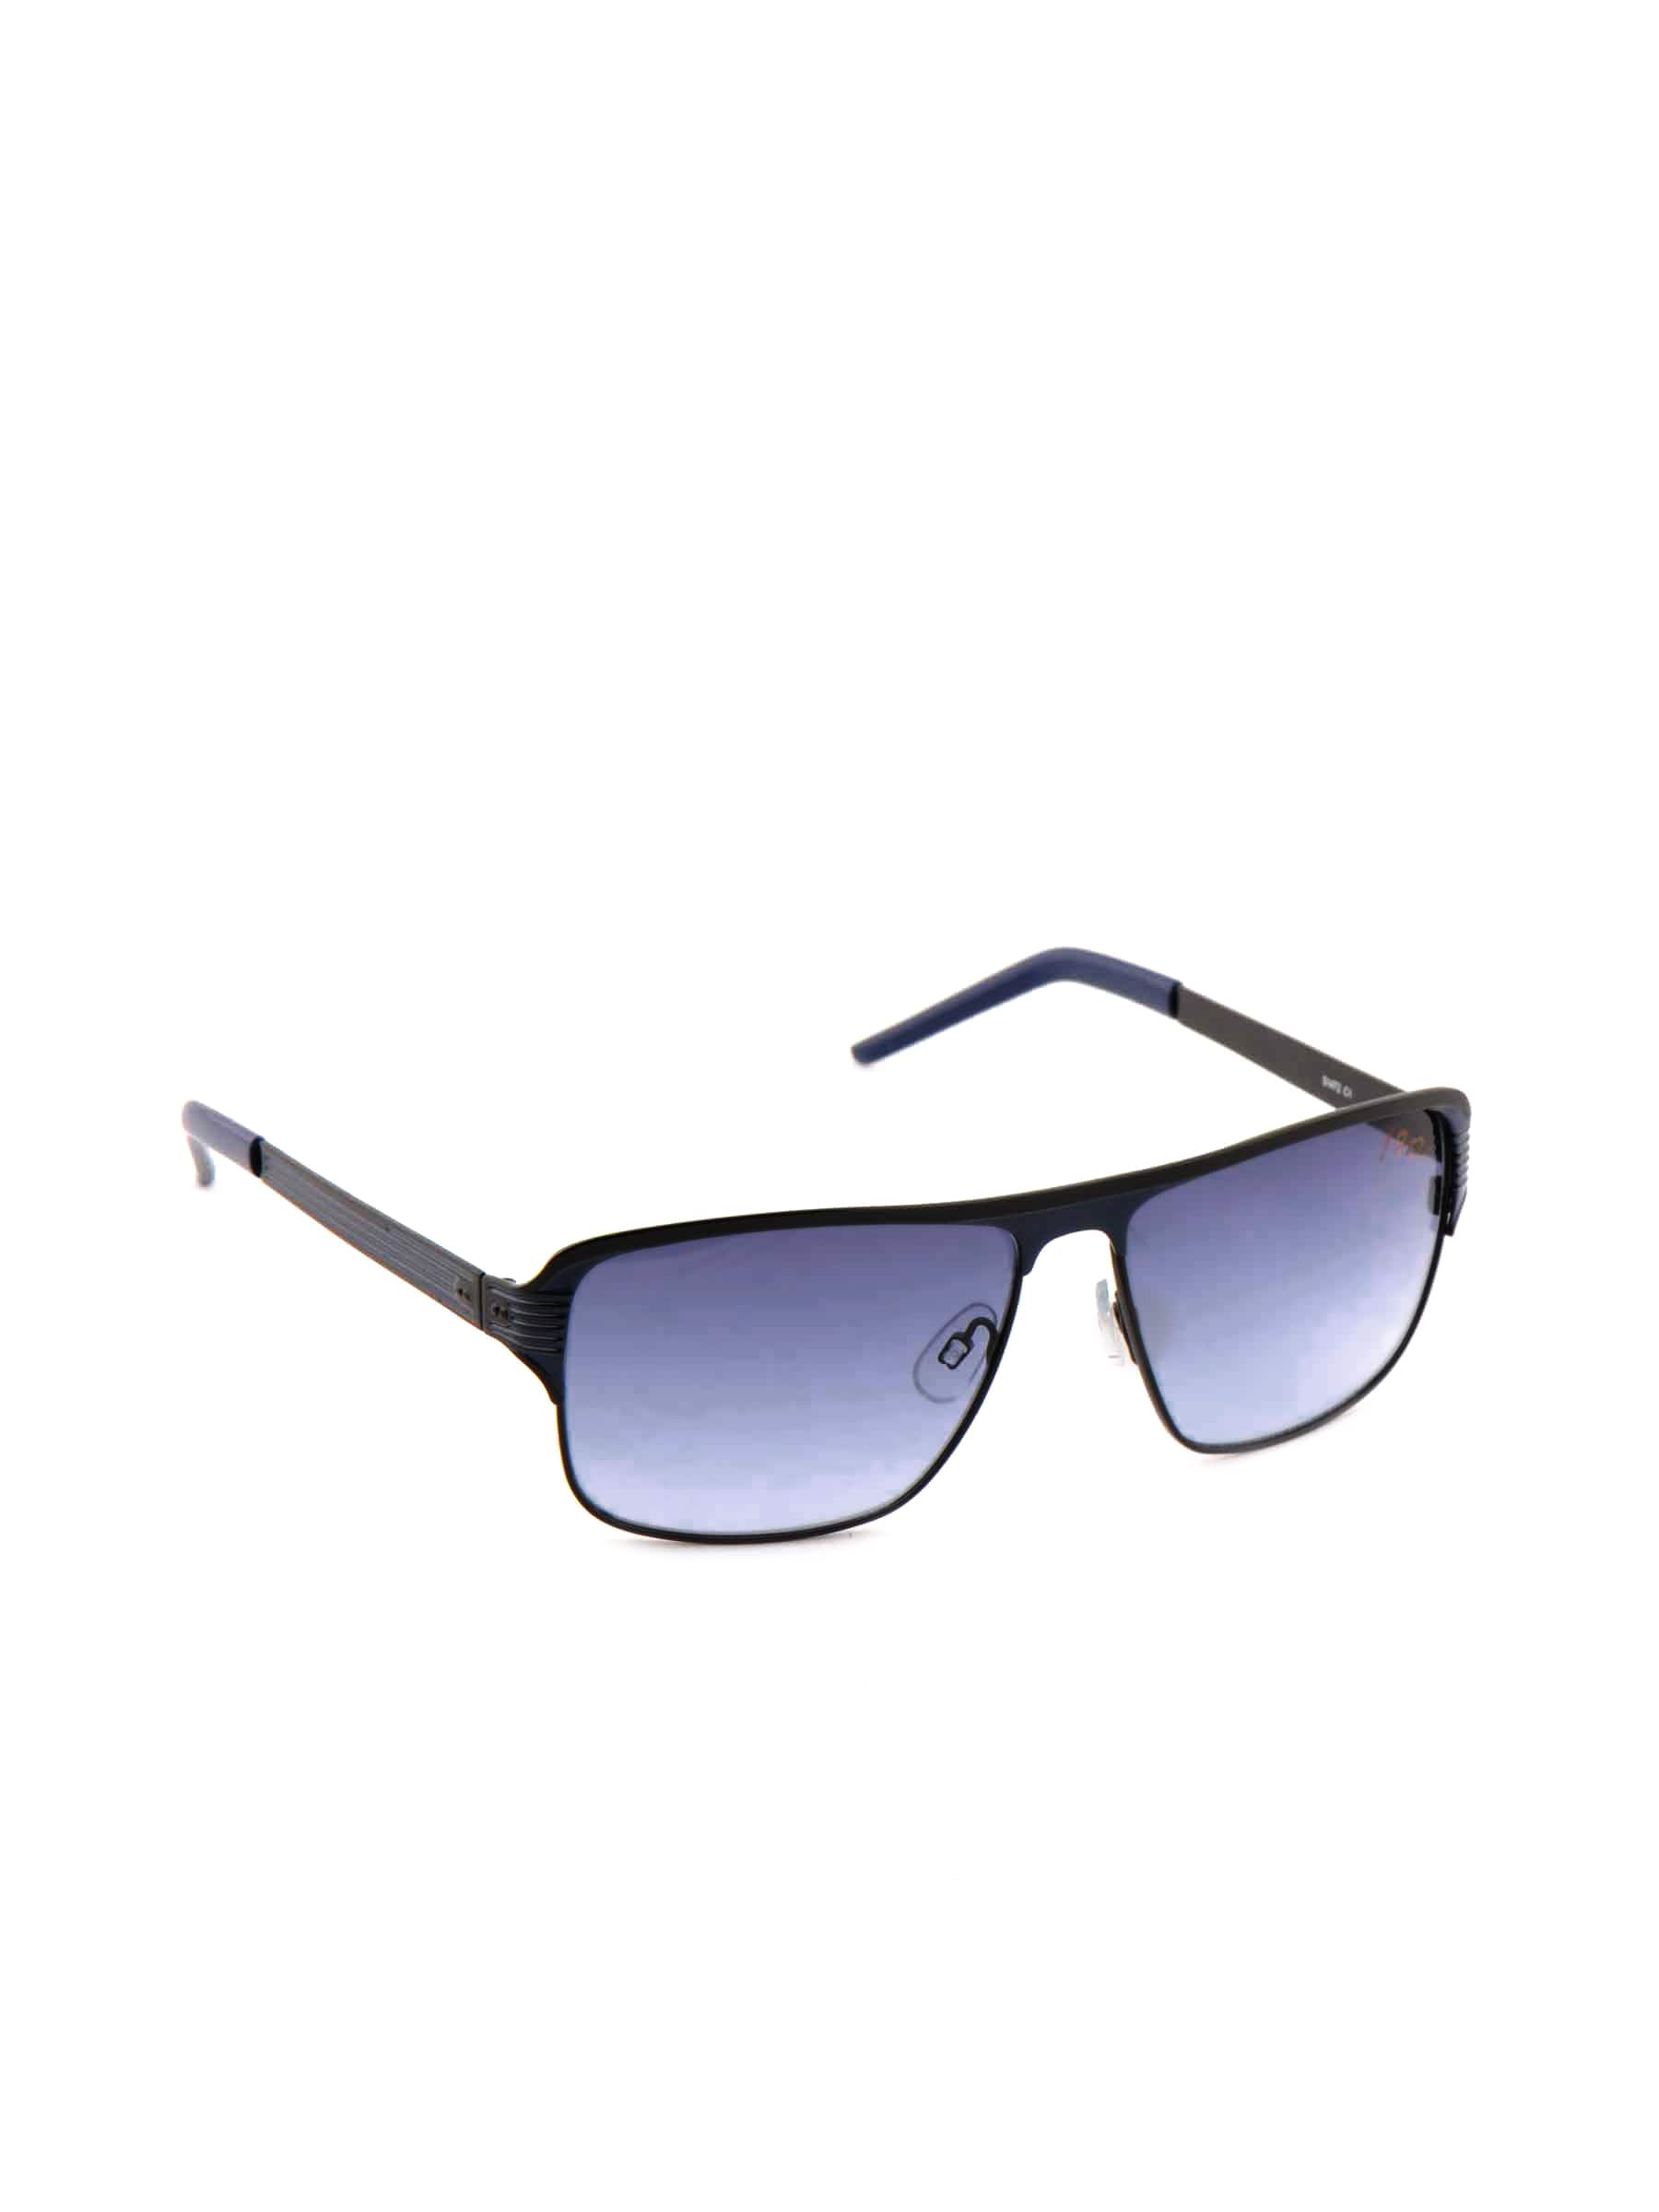 Idee Men Funky Eyewear Blue Sunglasses